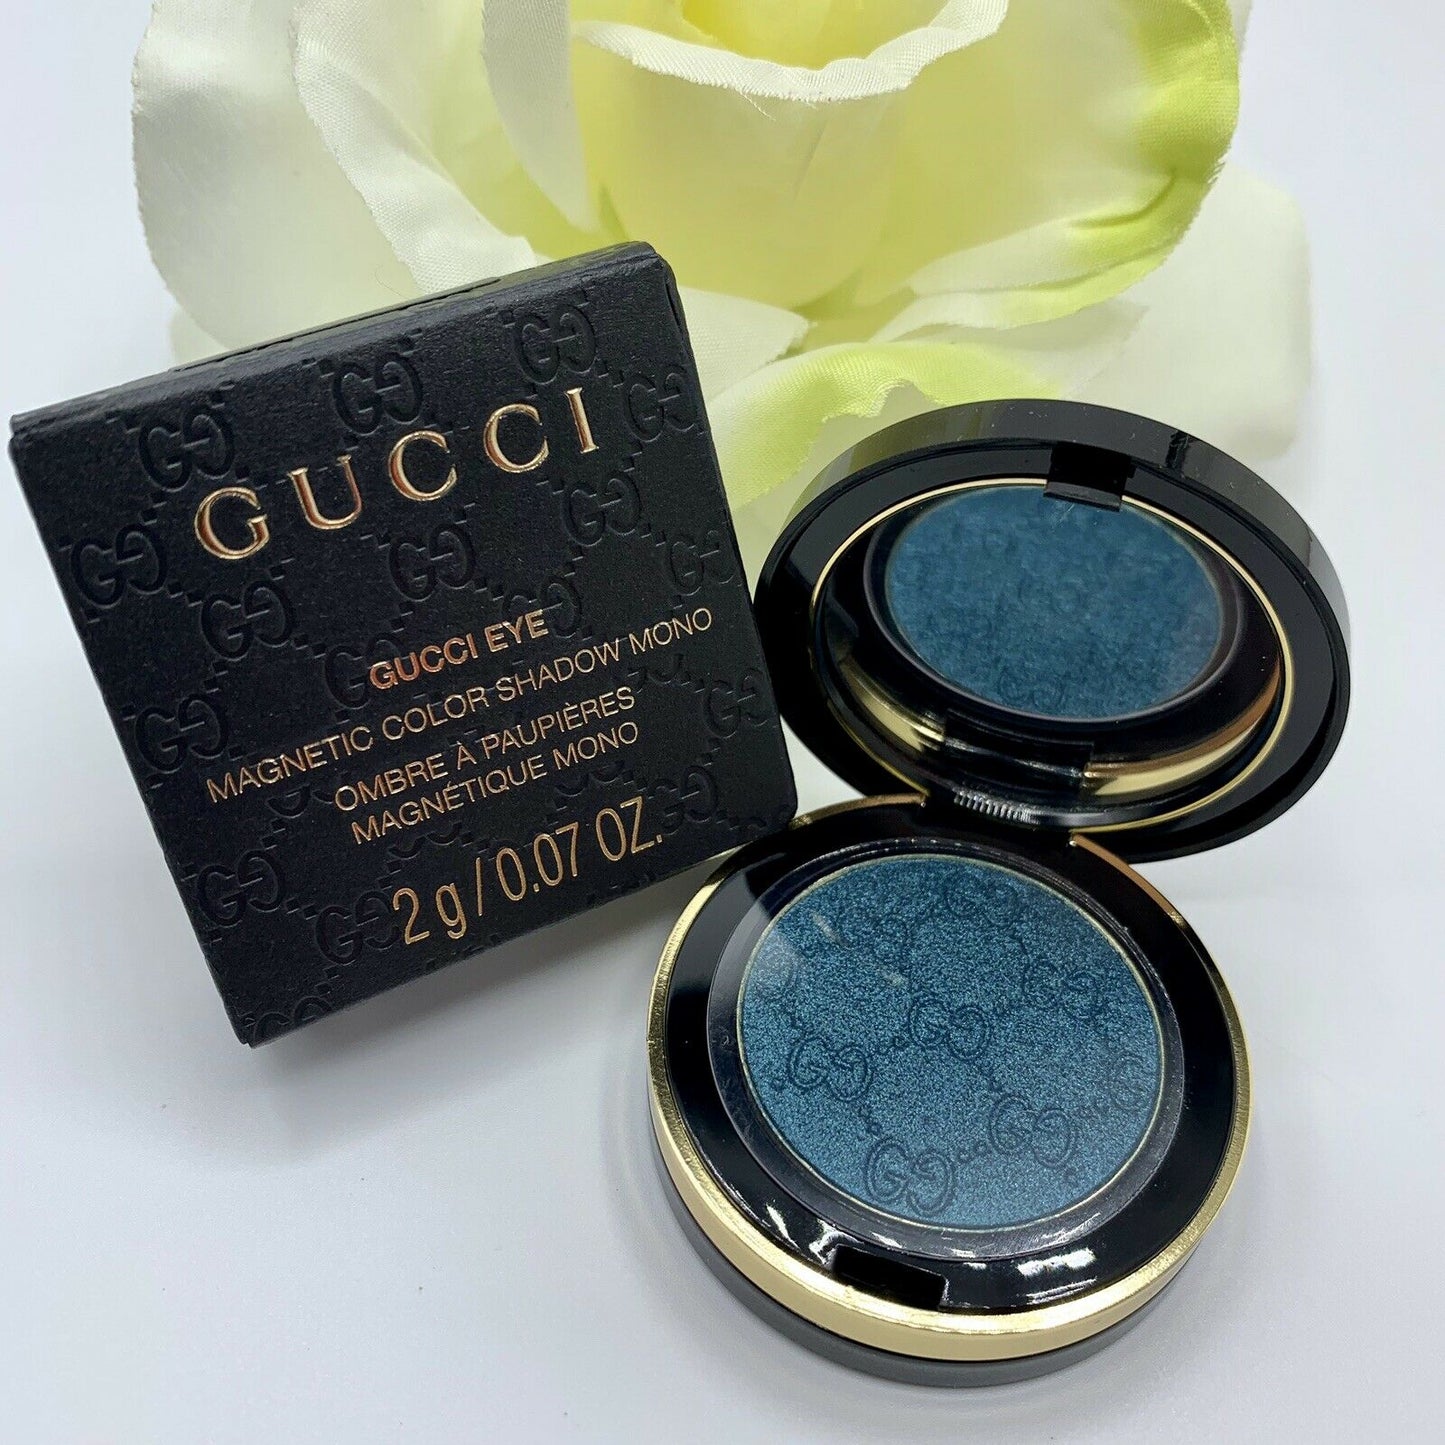 Gucci Magnetic Color Shadow Mono 120 Iconic ottanio